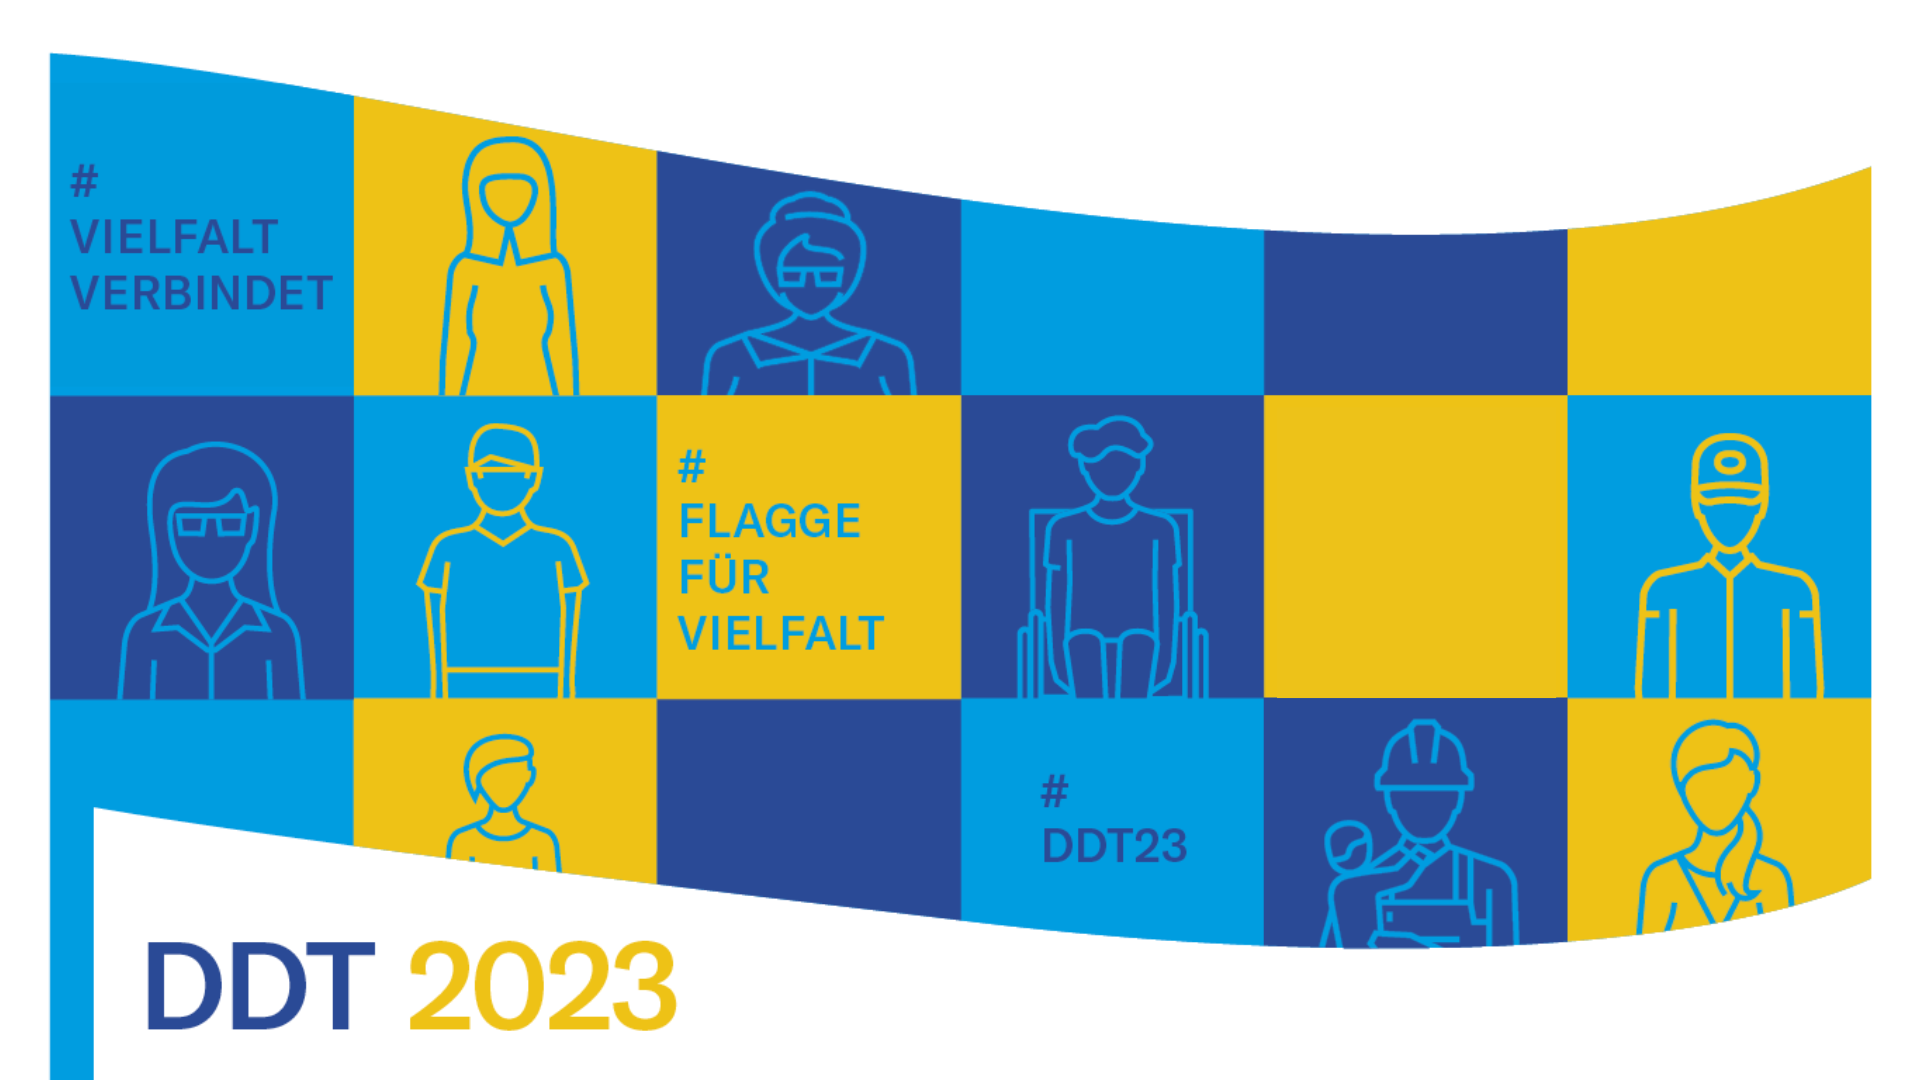 Grafische Darstellung einer Flagge, auf der in verschiedenen Quadraten Personen angedeutet sind, die die Vielfalt der Gesellschaft in Deutschland repräsentieren. Im Text: DDT 2023 und die Hashtags #DDT23, #VielfaltVerbindet, #FlaggeFürVielfalt